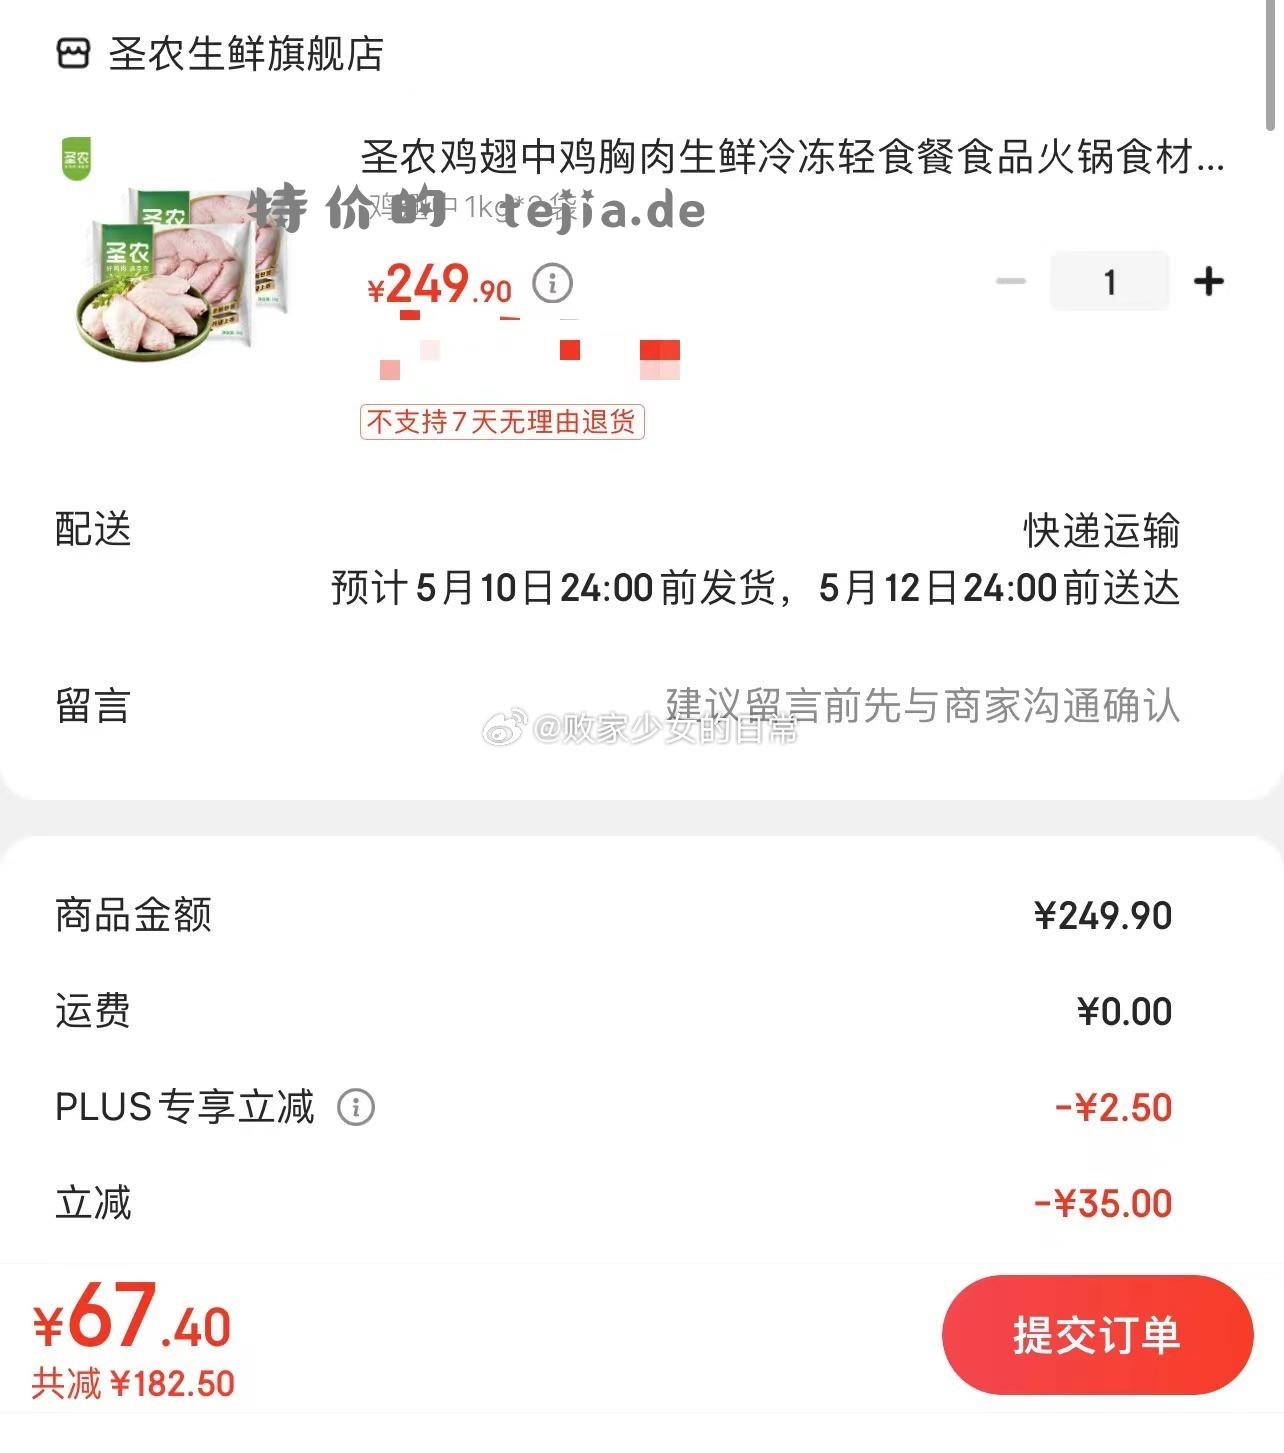 北京同仁堂老红糖块 plus试用到手6.56 如有省钱卡健康5劵价格更低 plus领200-10全品劵 - 特价的